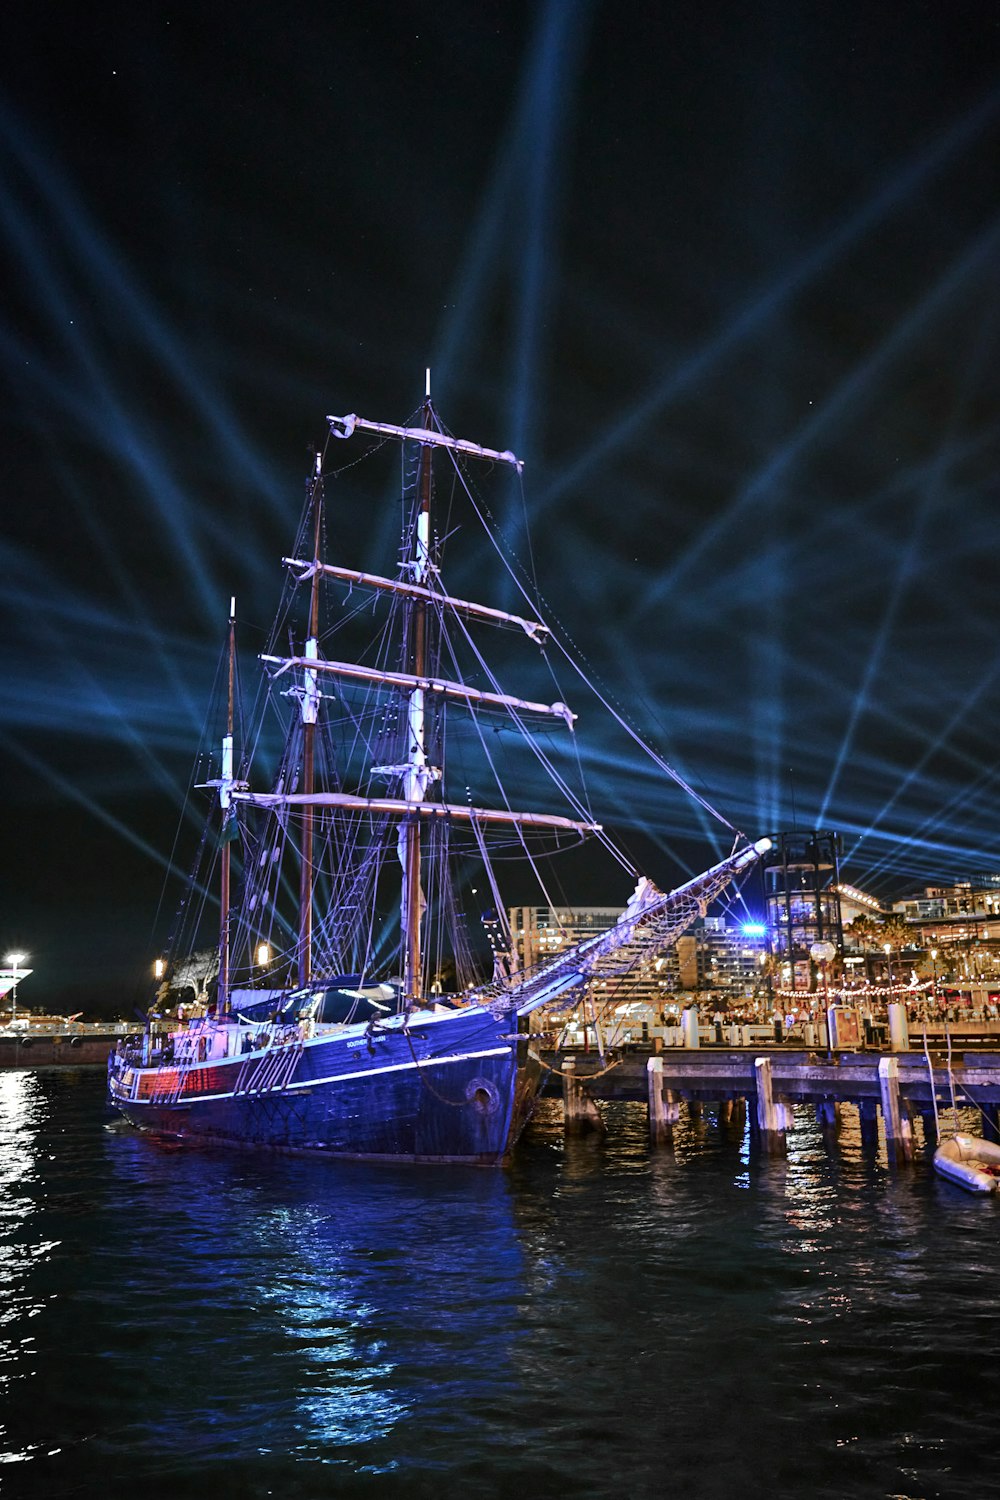 a large ship at night